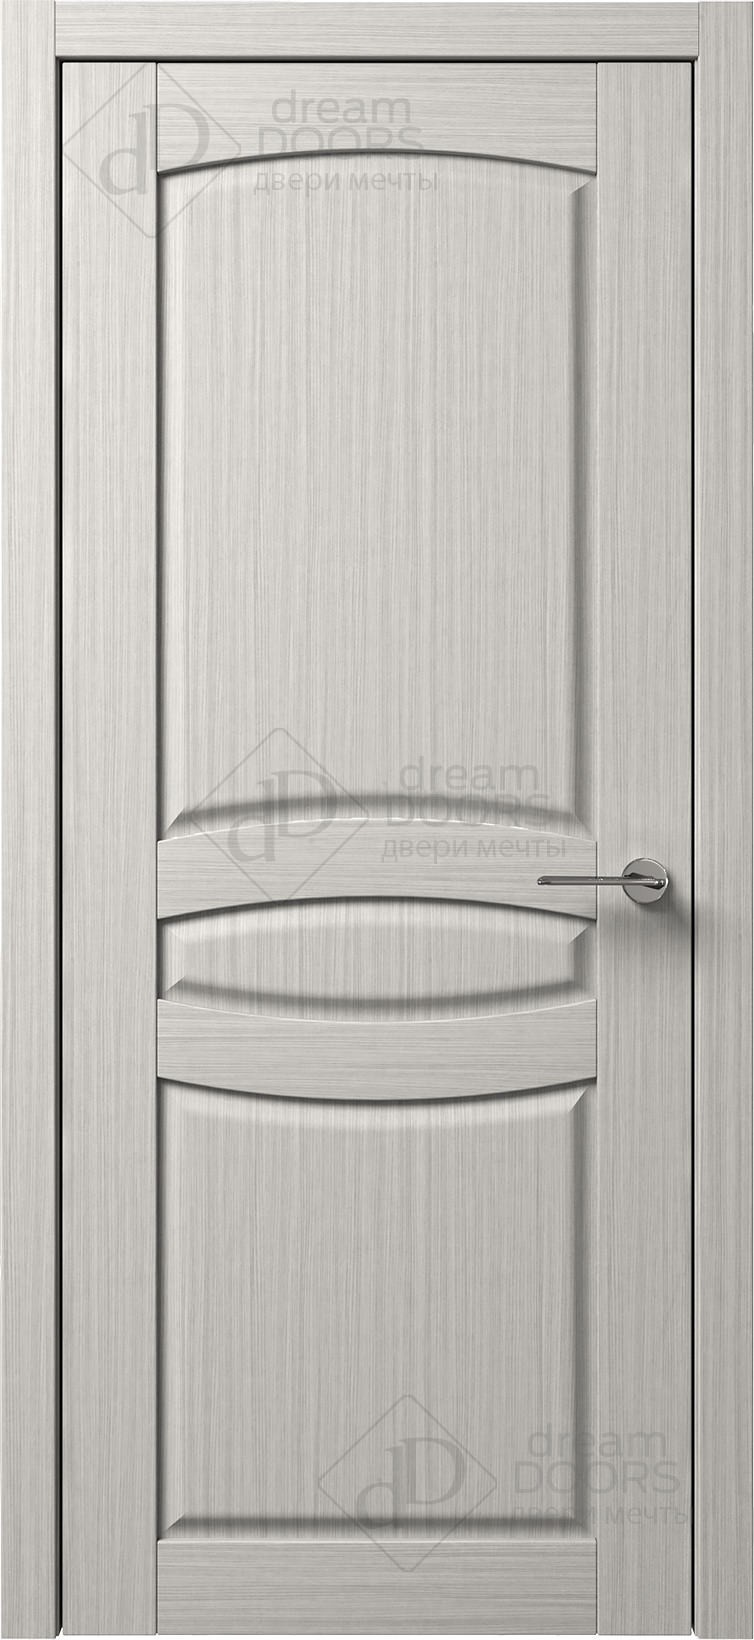 Dream Doors Межкомнатная дверь B11-3, арт. 5582 - фото №1